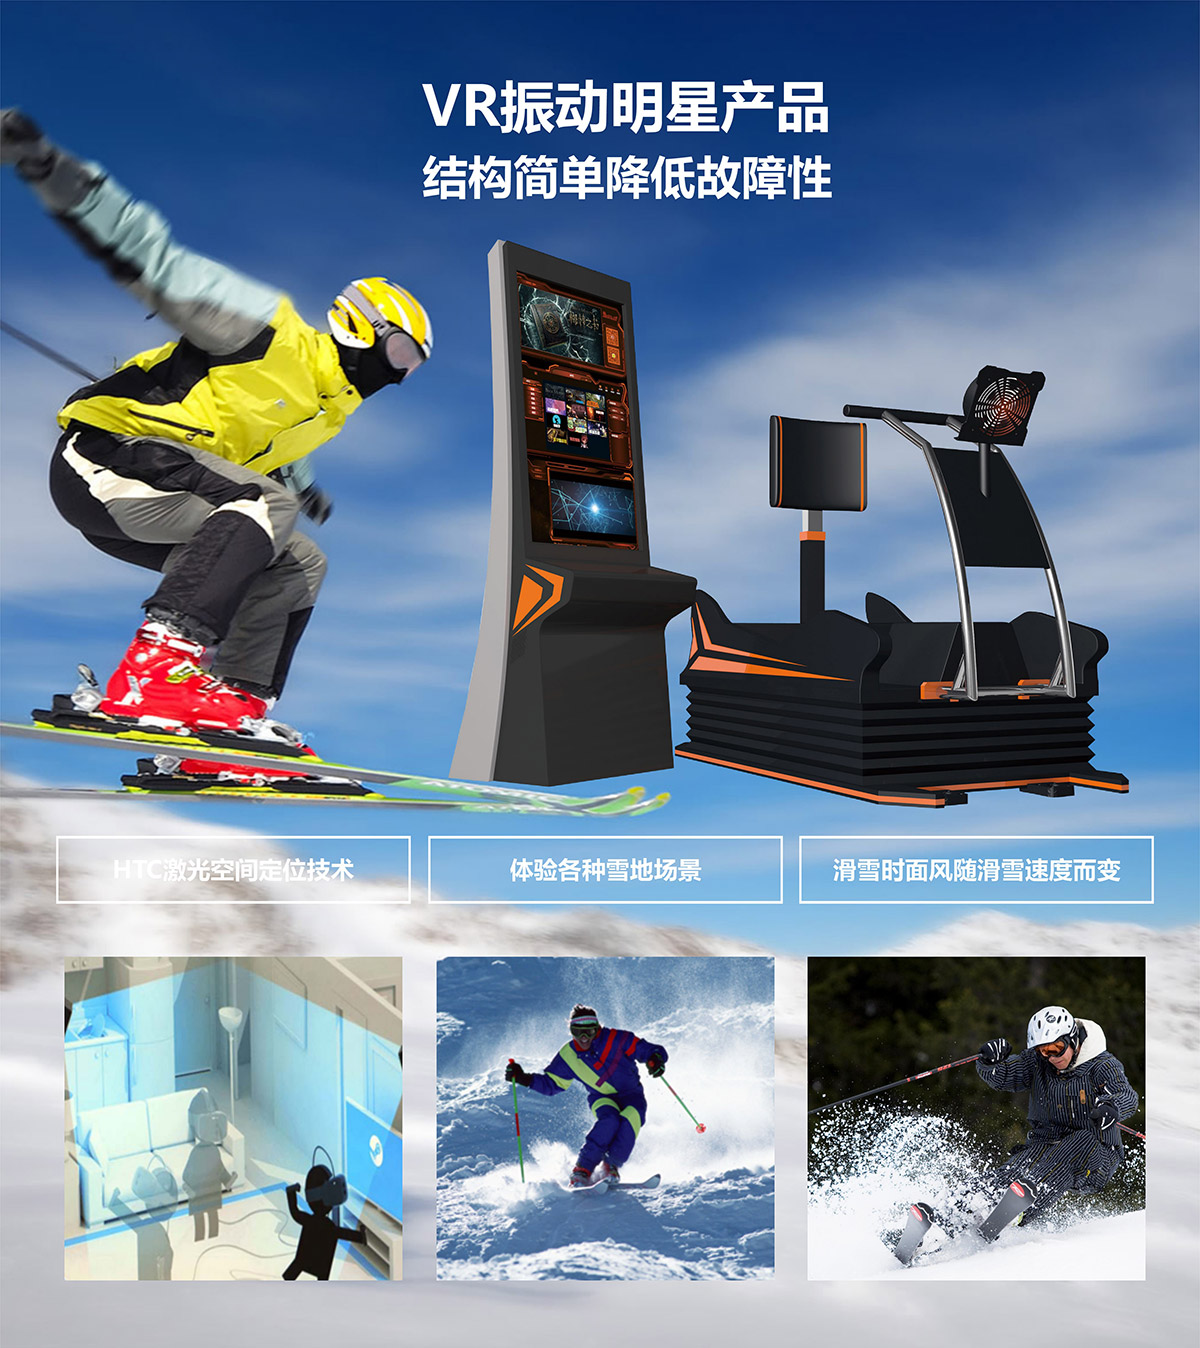 云南卓信智诚VR明星产品模拟滑雪.jpg